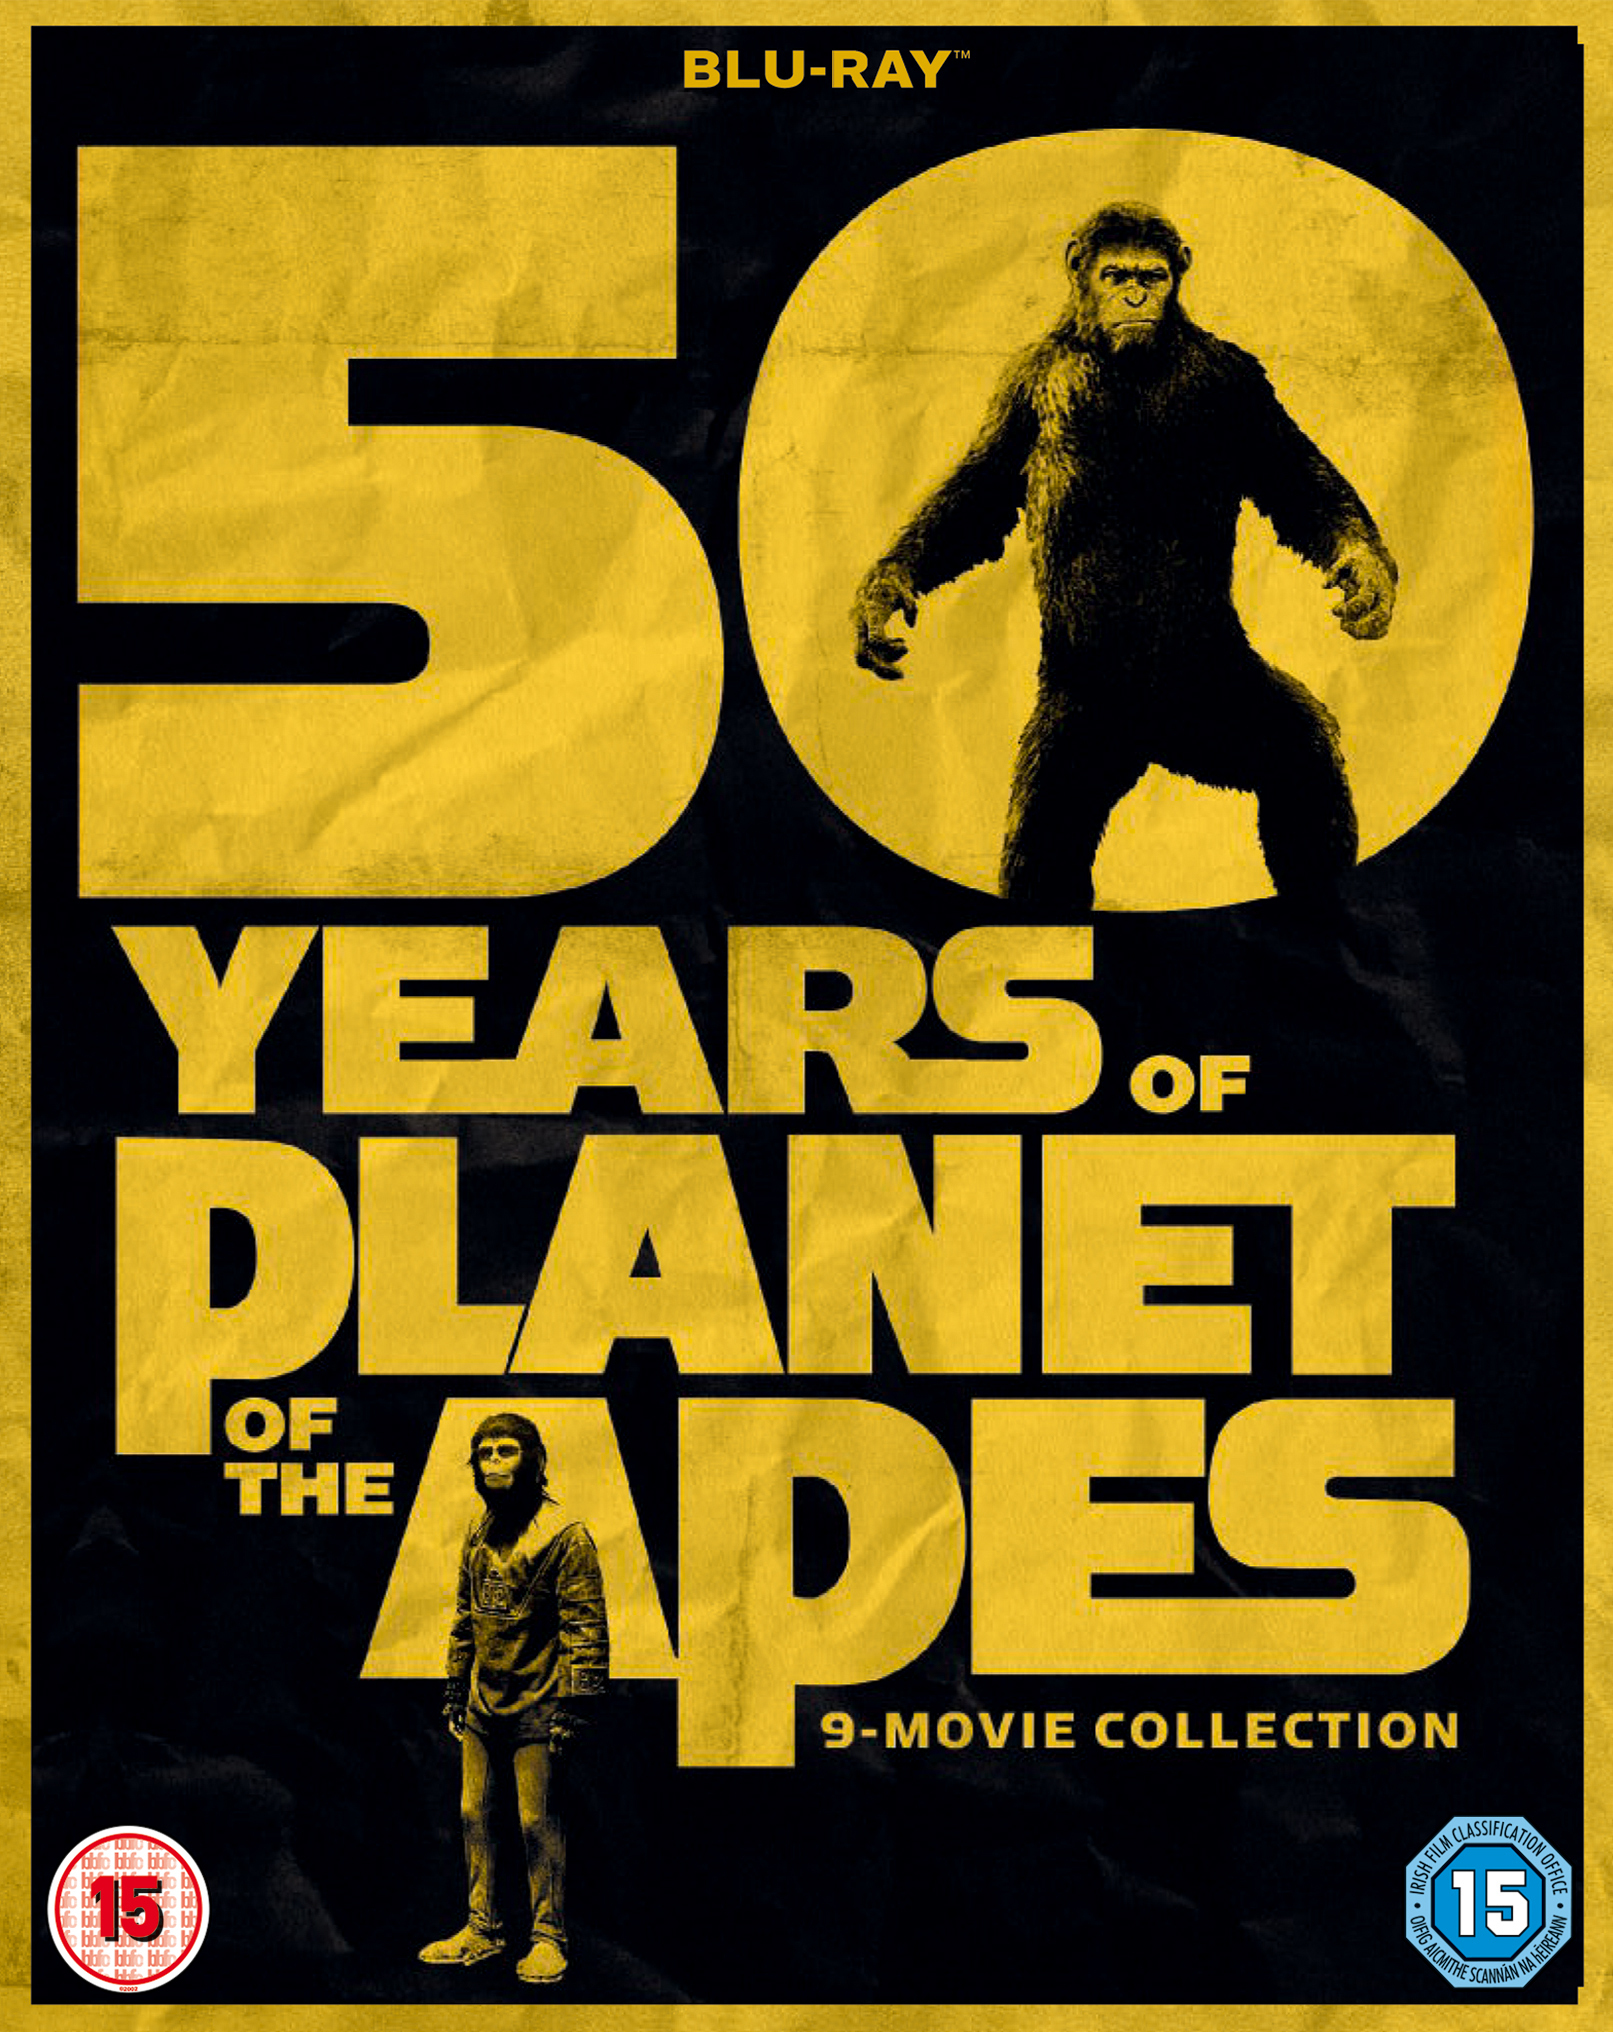 Planet of the Apes 50 Years Of 9-Movie Collection (1968-2017) El Planeta de los Simios: Colección de 9 Películas (1968-2017) [AC3 5.1/2.0 + SUP/SRT] [Blu Ray-Rip] [DVD-RIP] 218442_front